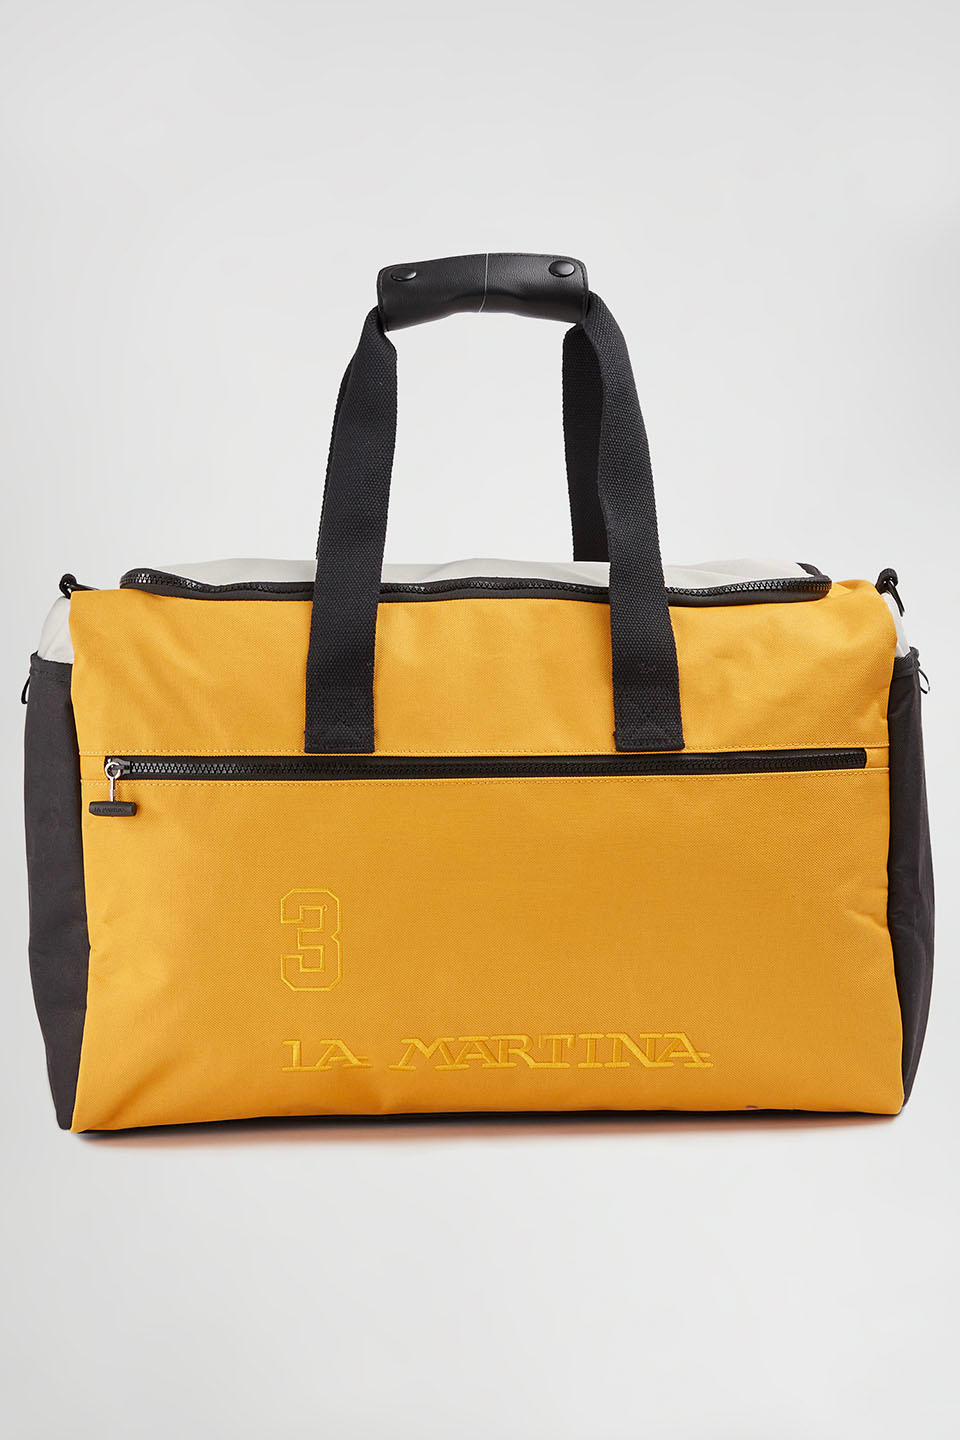 Polyester duffel bag - La Martina - Official Online Shop